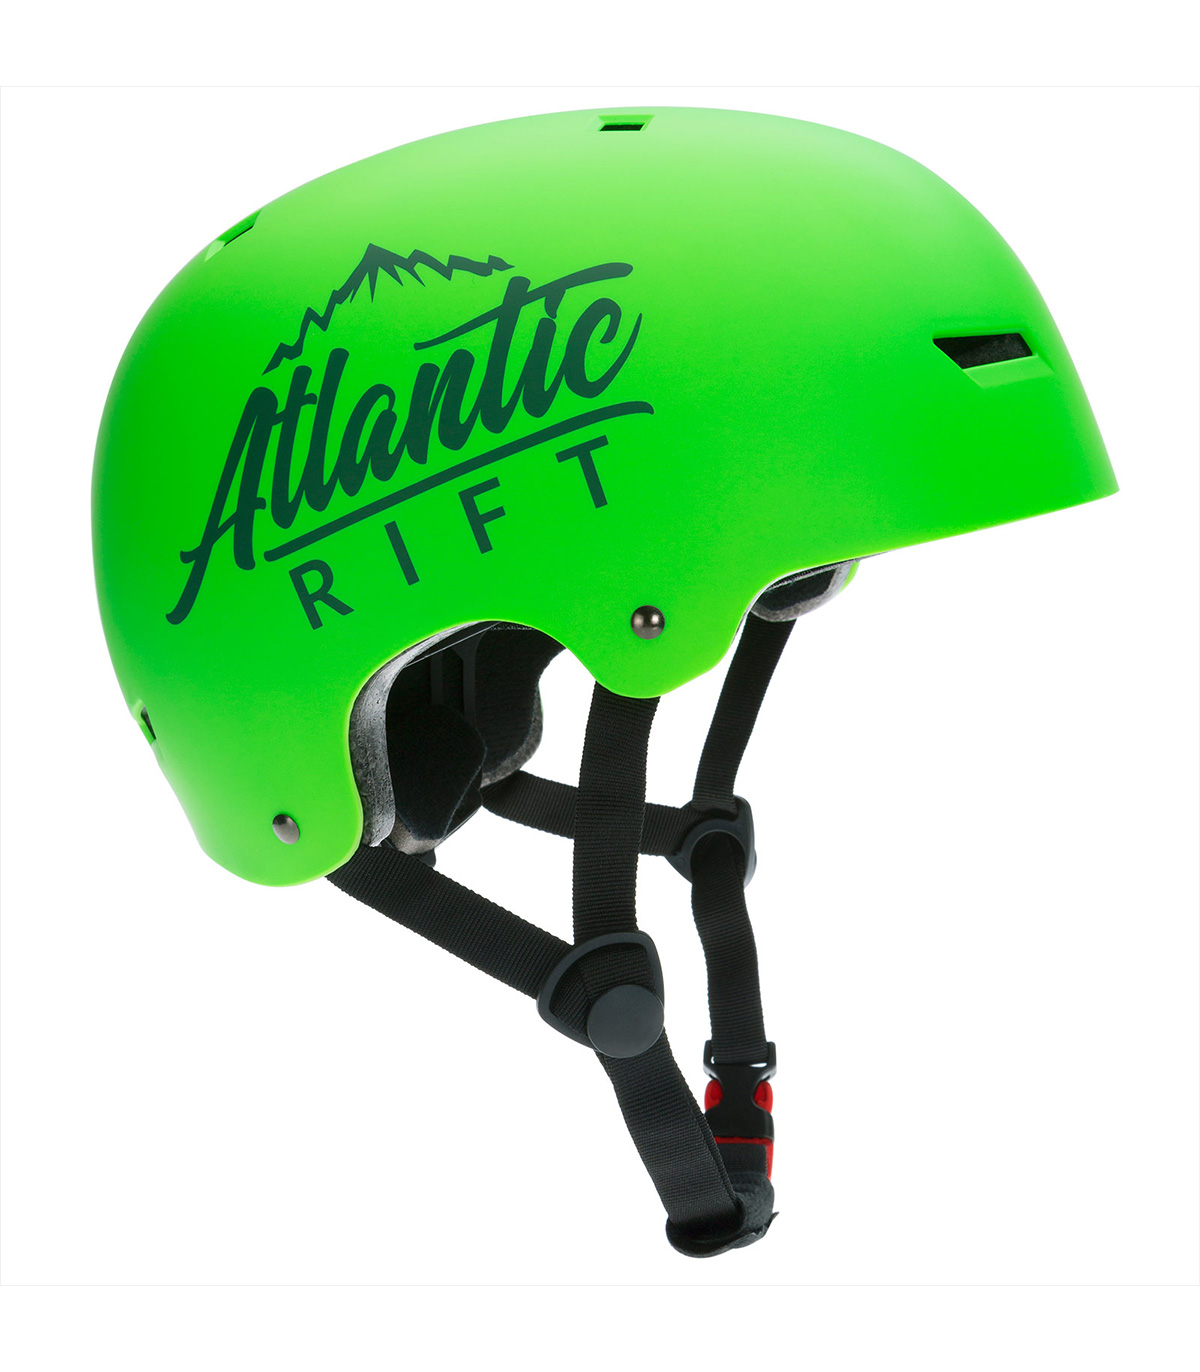 Casca protectie bicicleta/skateboard pentru copii, marime M, Atlantic Rift, Verde activitati